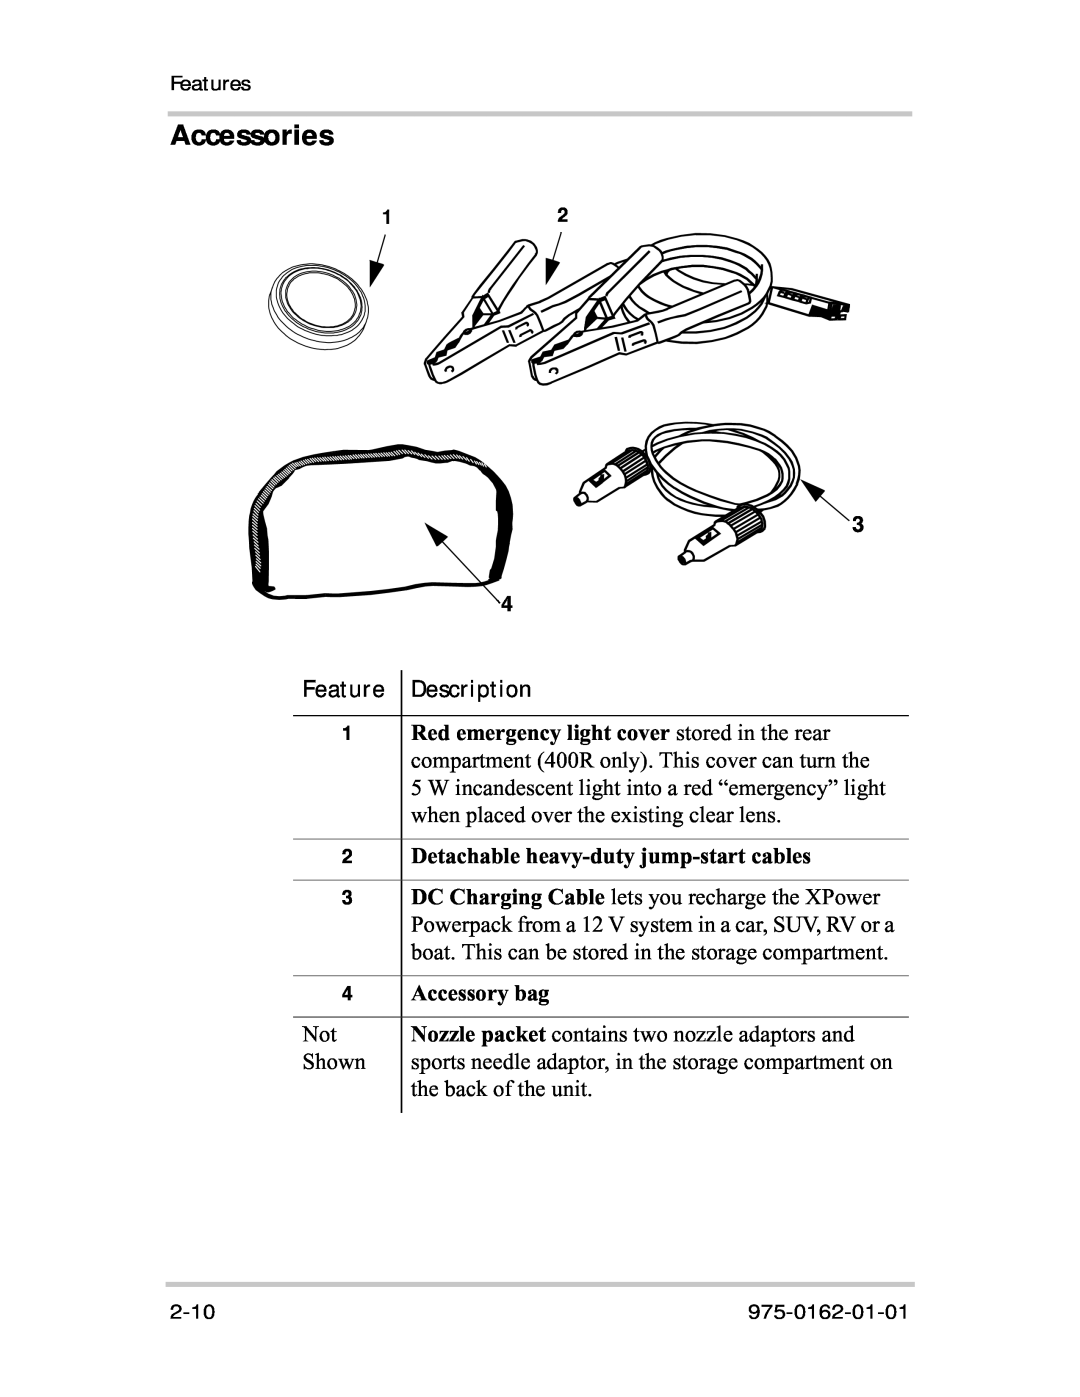 Xantrex Technology 400R manual Accessories, Feature Description, Detachable heavy-duty jump-start cables, Accessory bag 